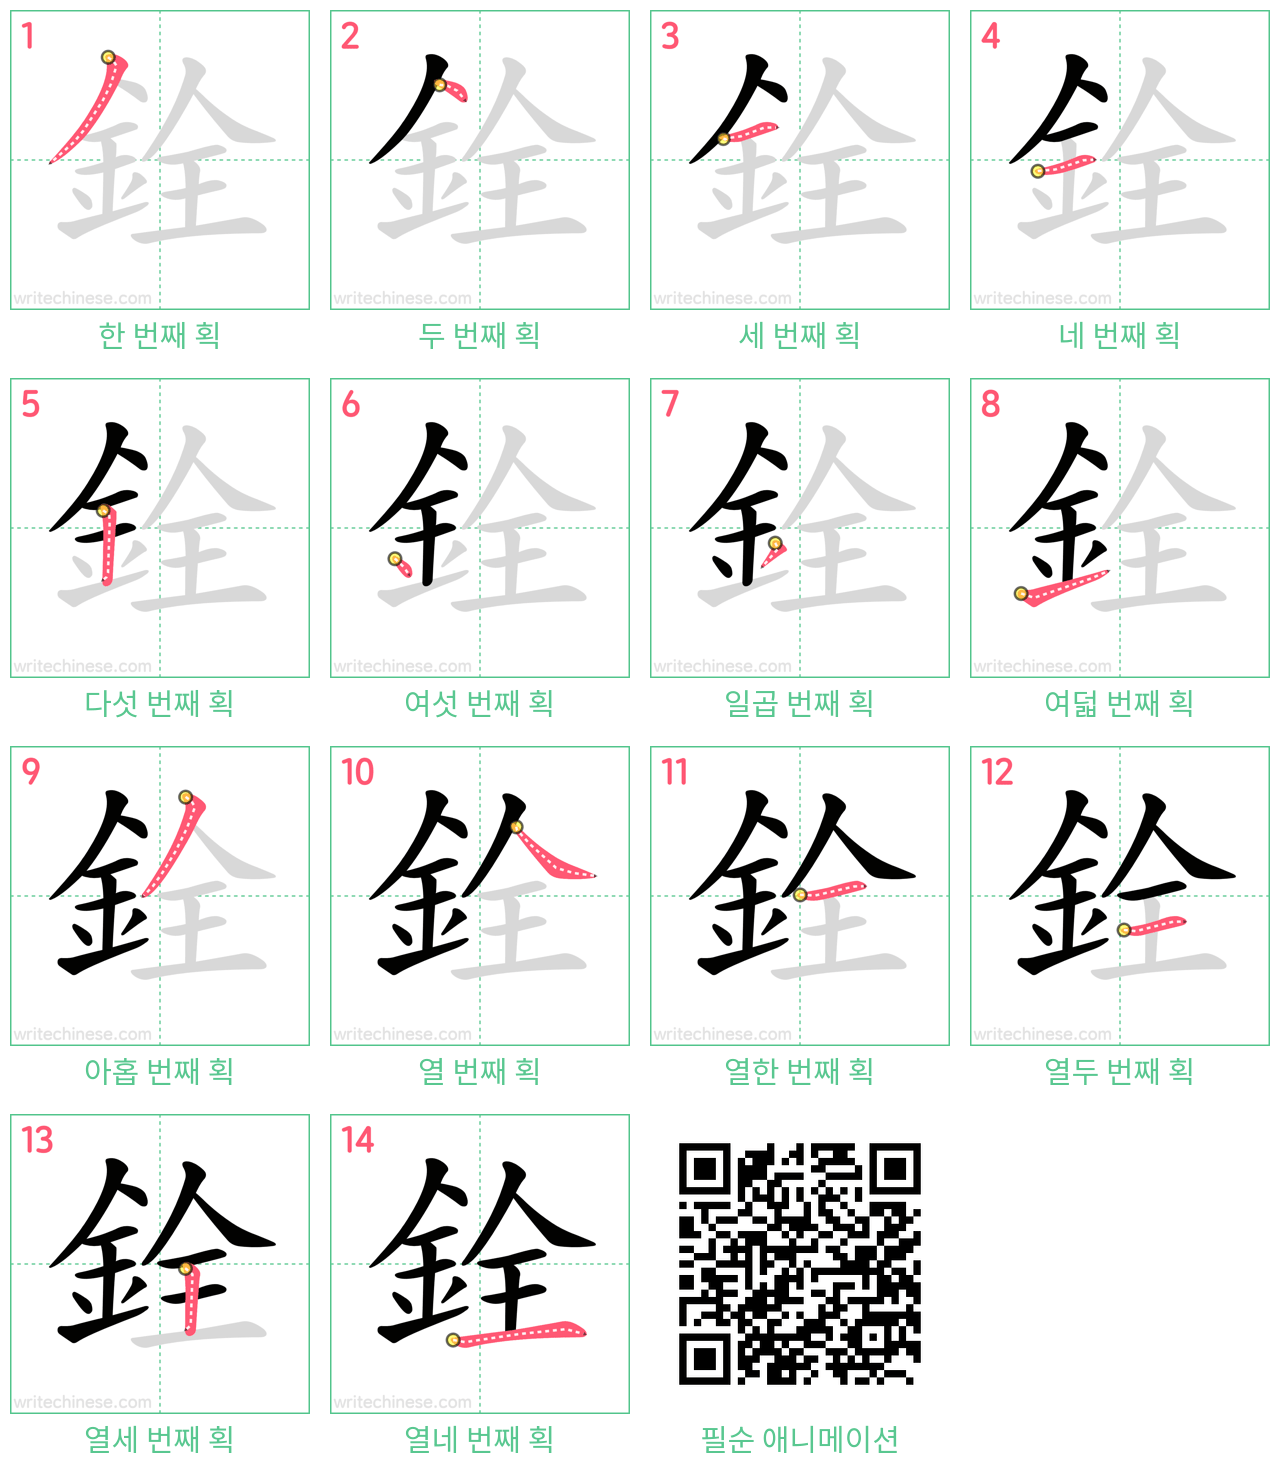 銓 step-by-step stroke order diagrams